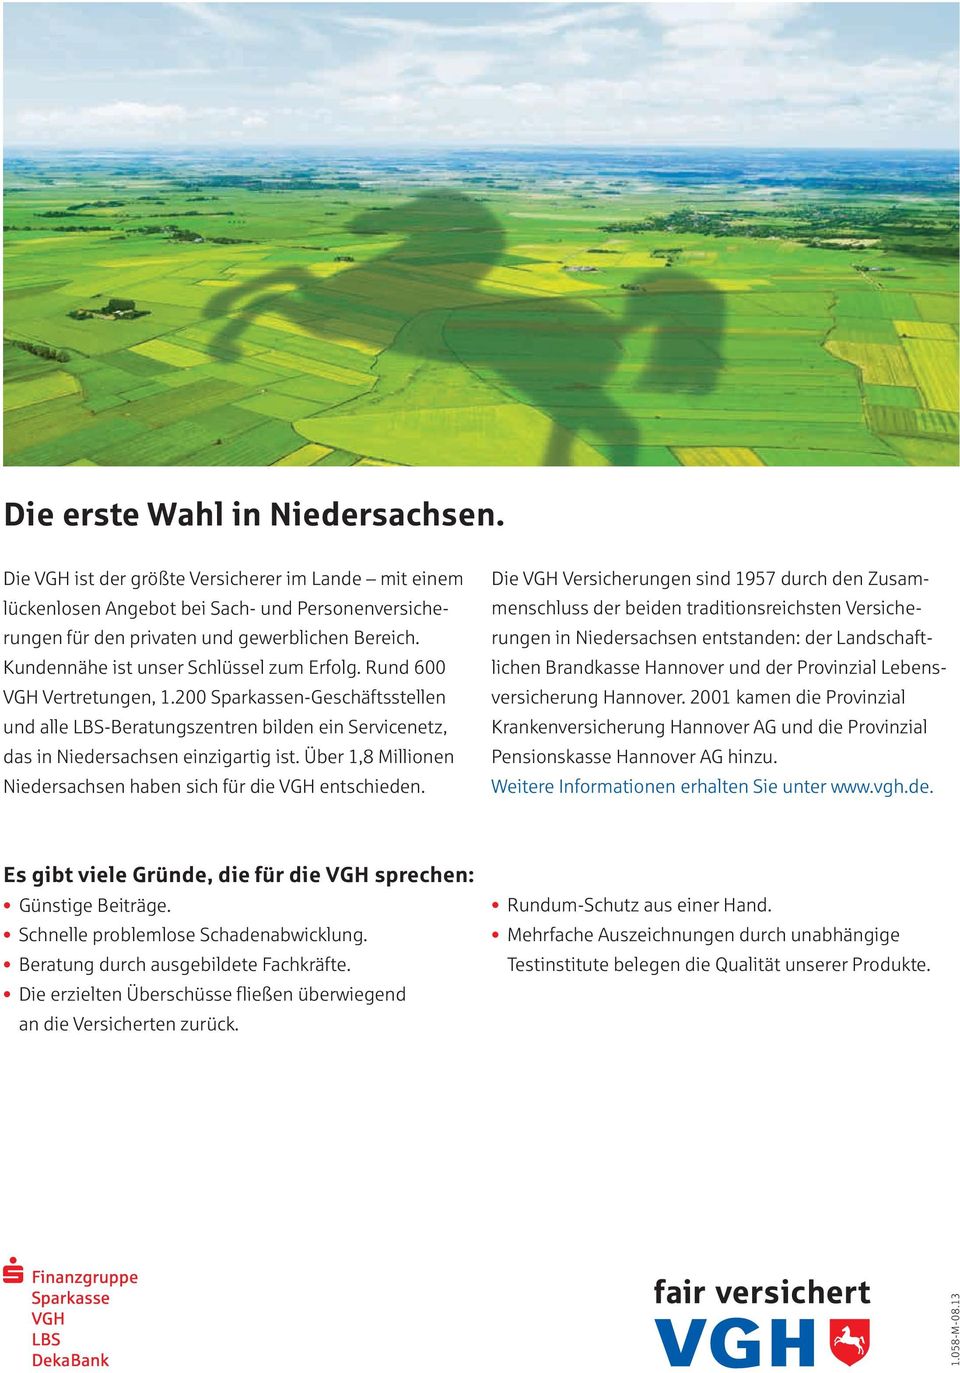 Über 1,8 Millionen Niedersachsen haben sich für die VGH entschieden.